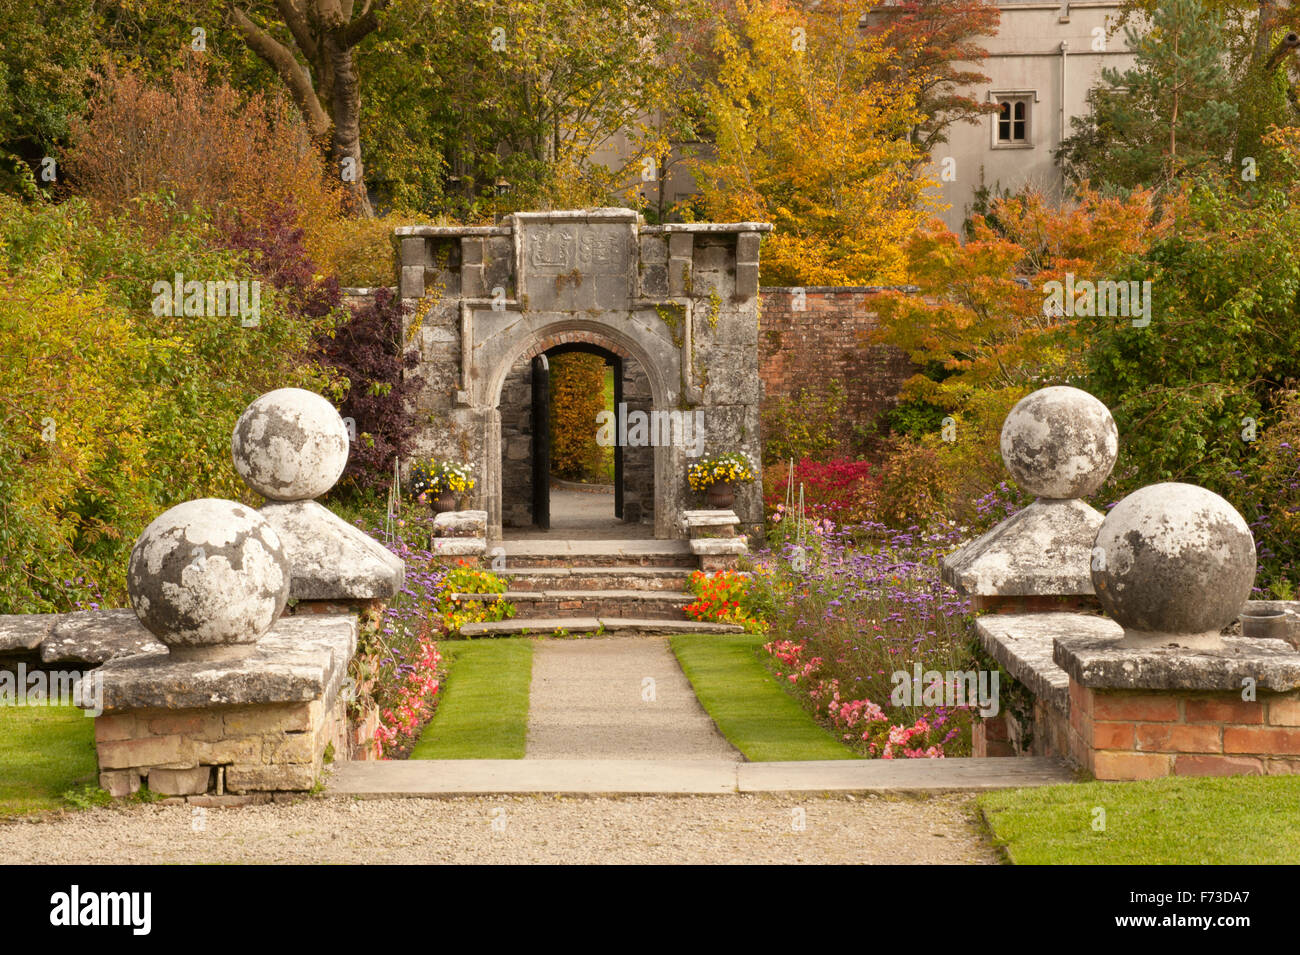 Dromoland Castle Hotel & Country Estate in Co. Clare ist eines der besten 5-Sterne-Schlosshotels in Irland. Der ummauerte Garten Herbstszenen Stockfoto